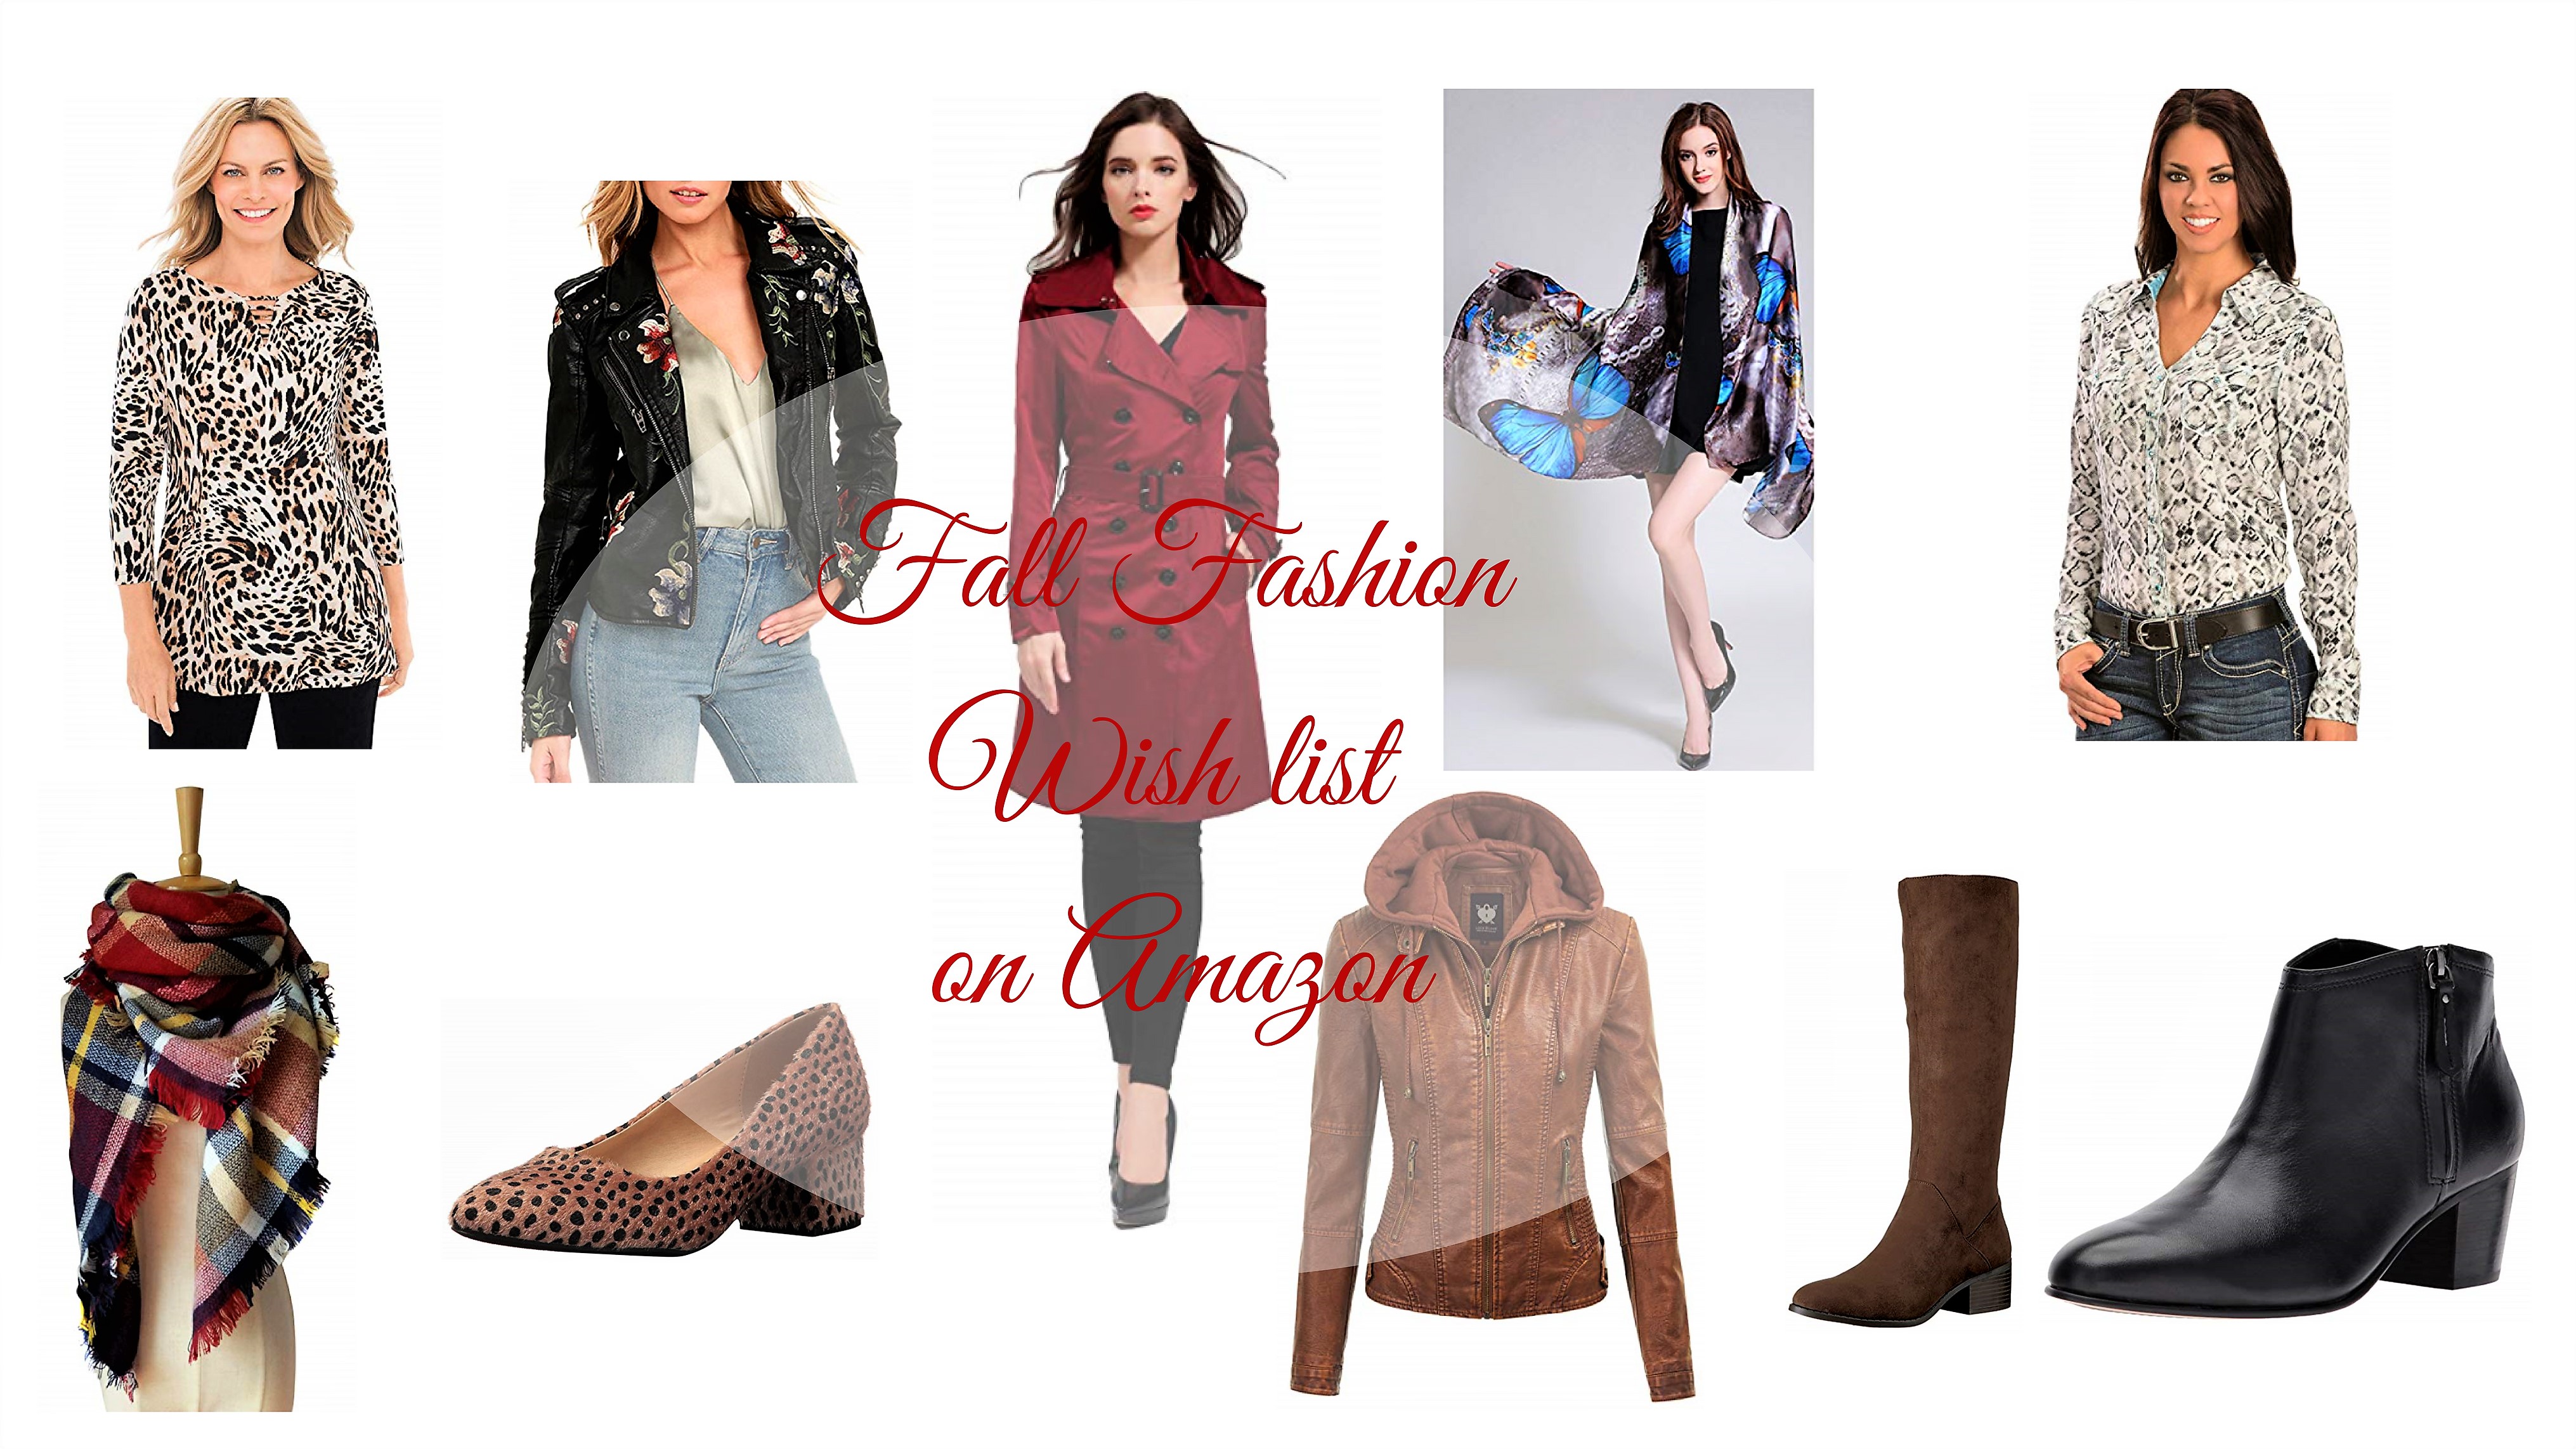 Fall Fashion Wish list on Amazon - Glossnglitters